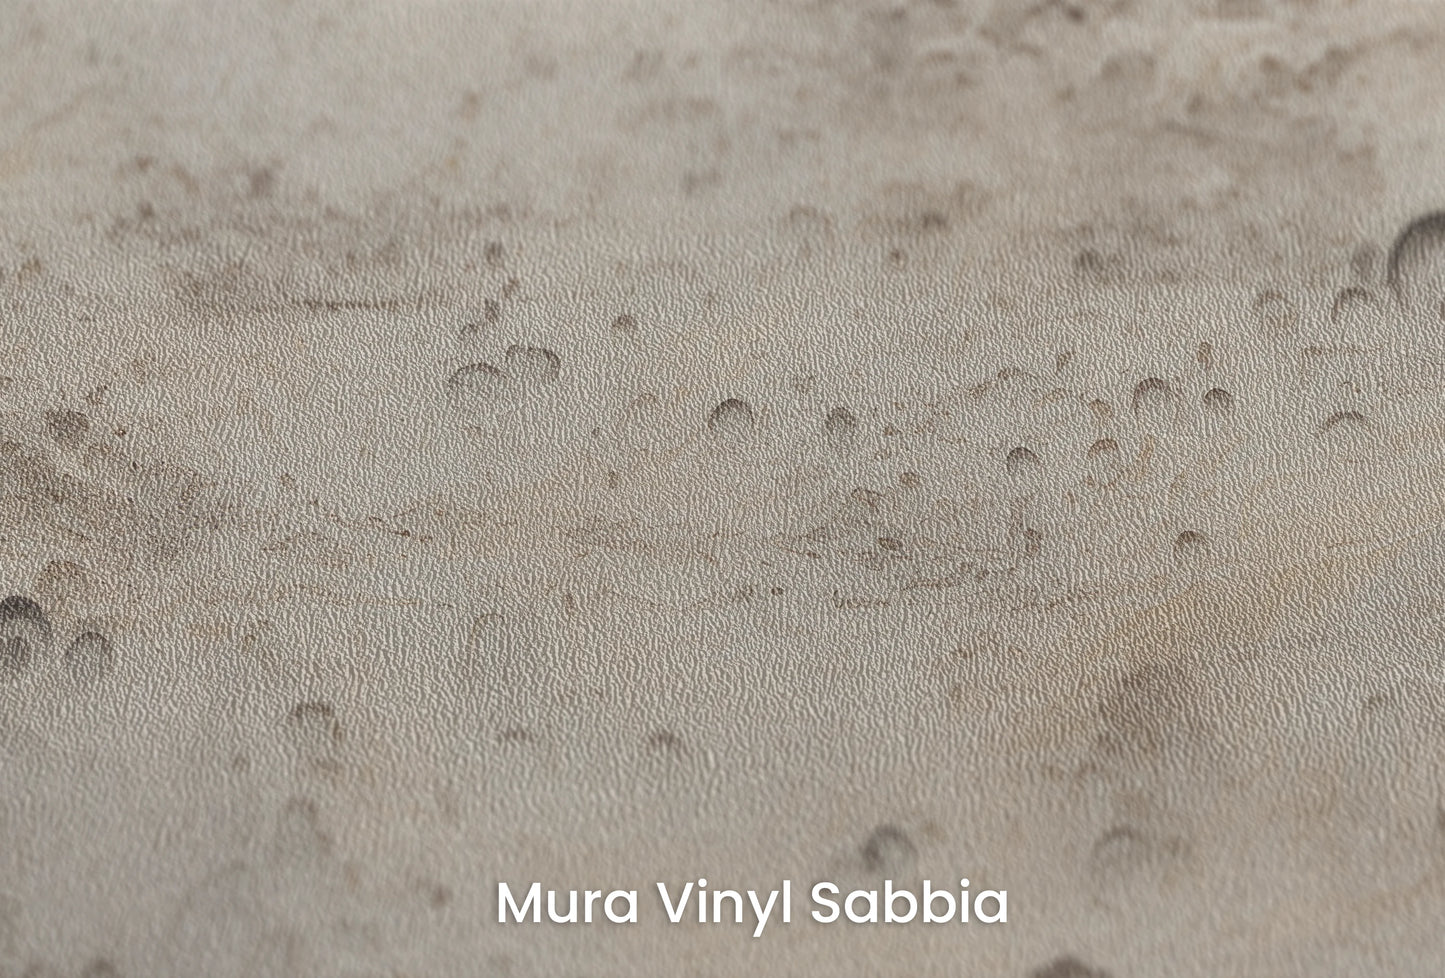 Zbliżenie na artystyczną fototapetę o nazwie Beige Moon na podłożu Mura Vinyl Sabbia struktura grubego ziarna piasku.